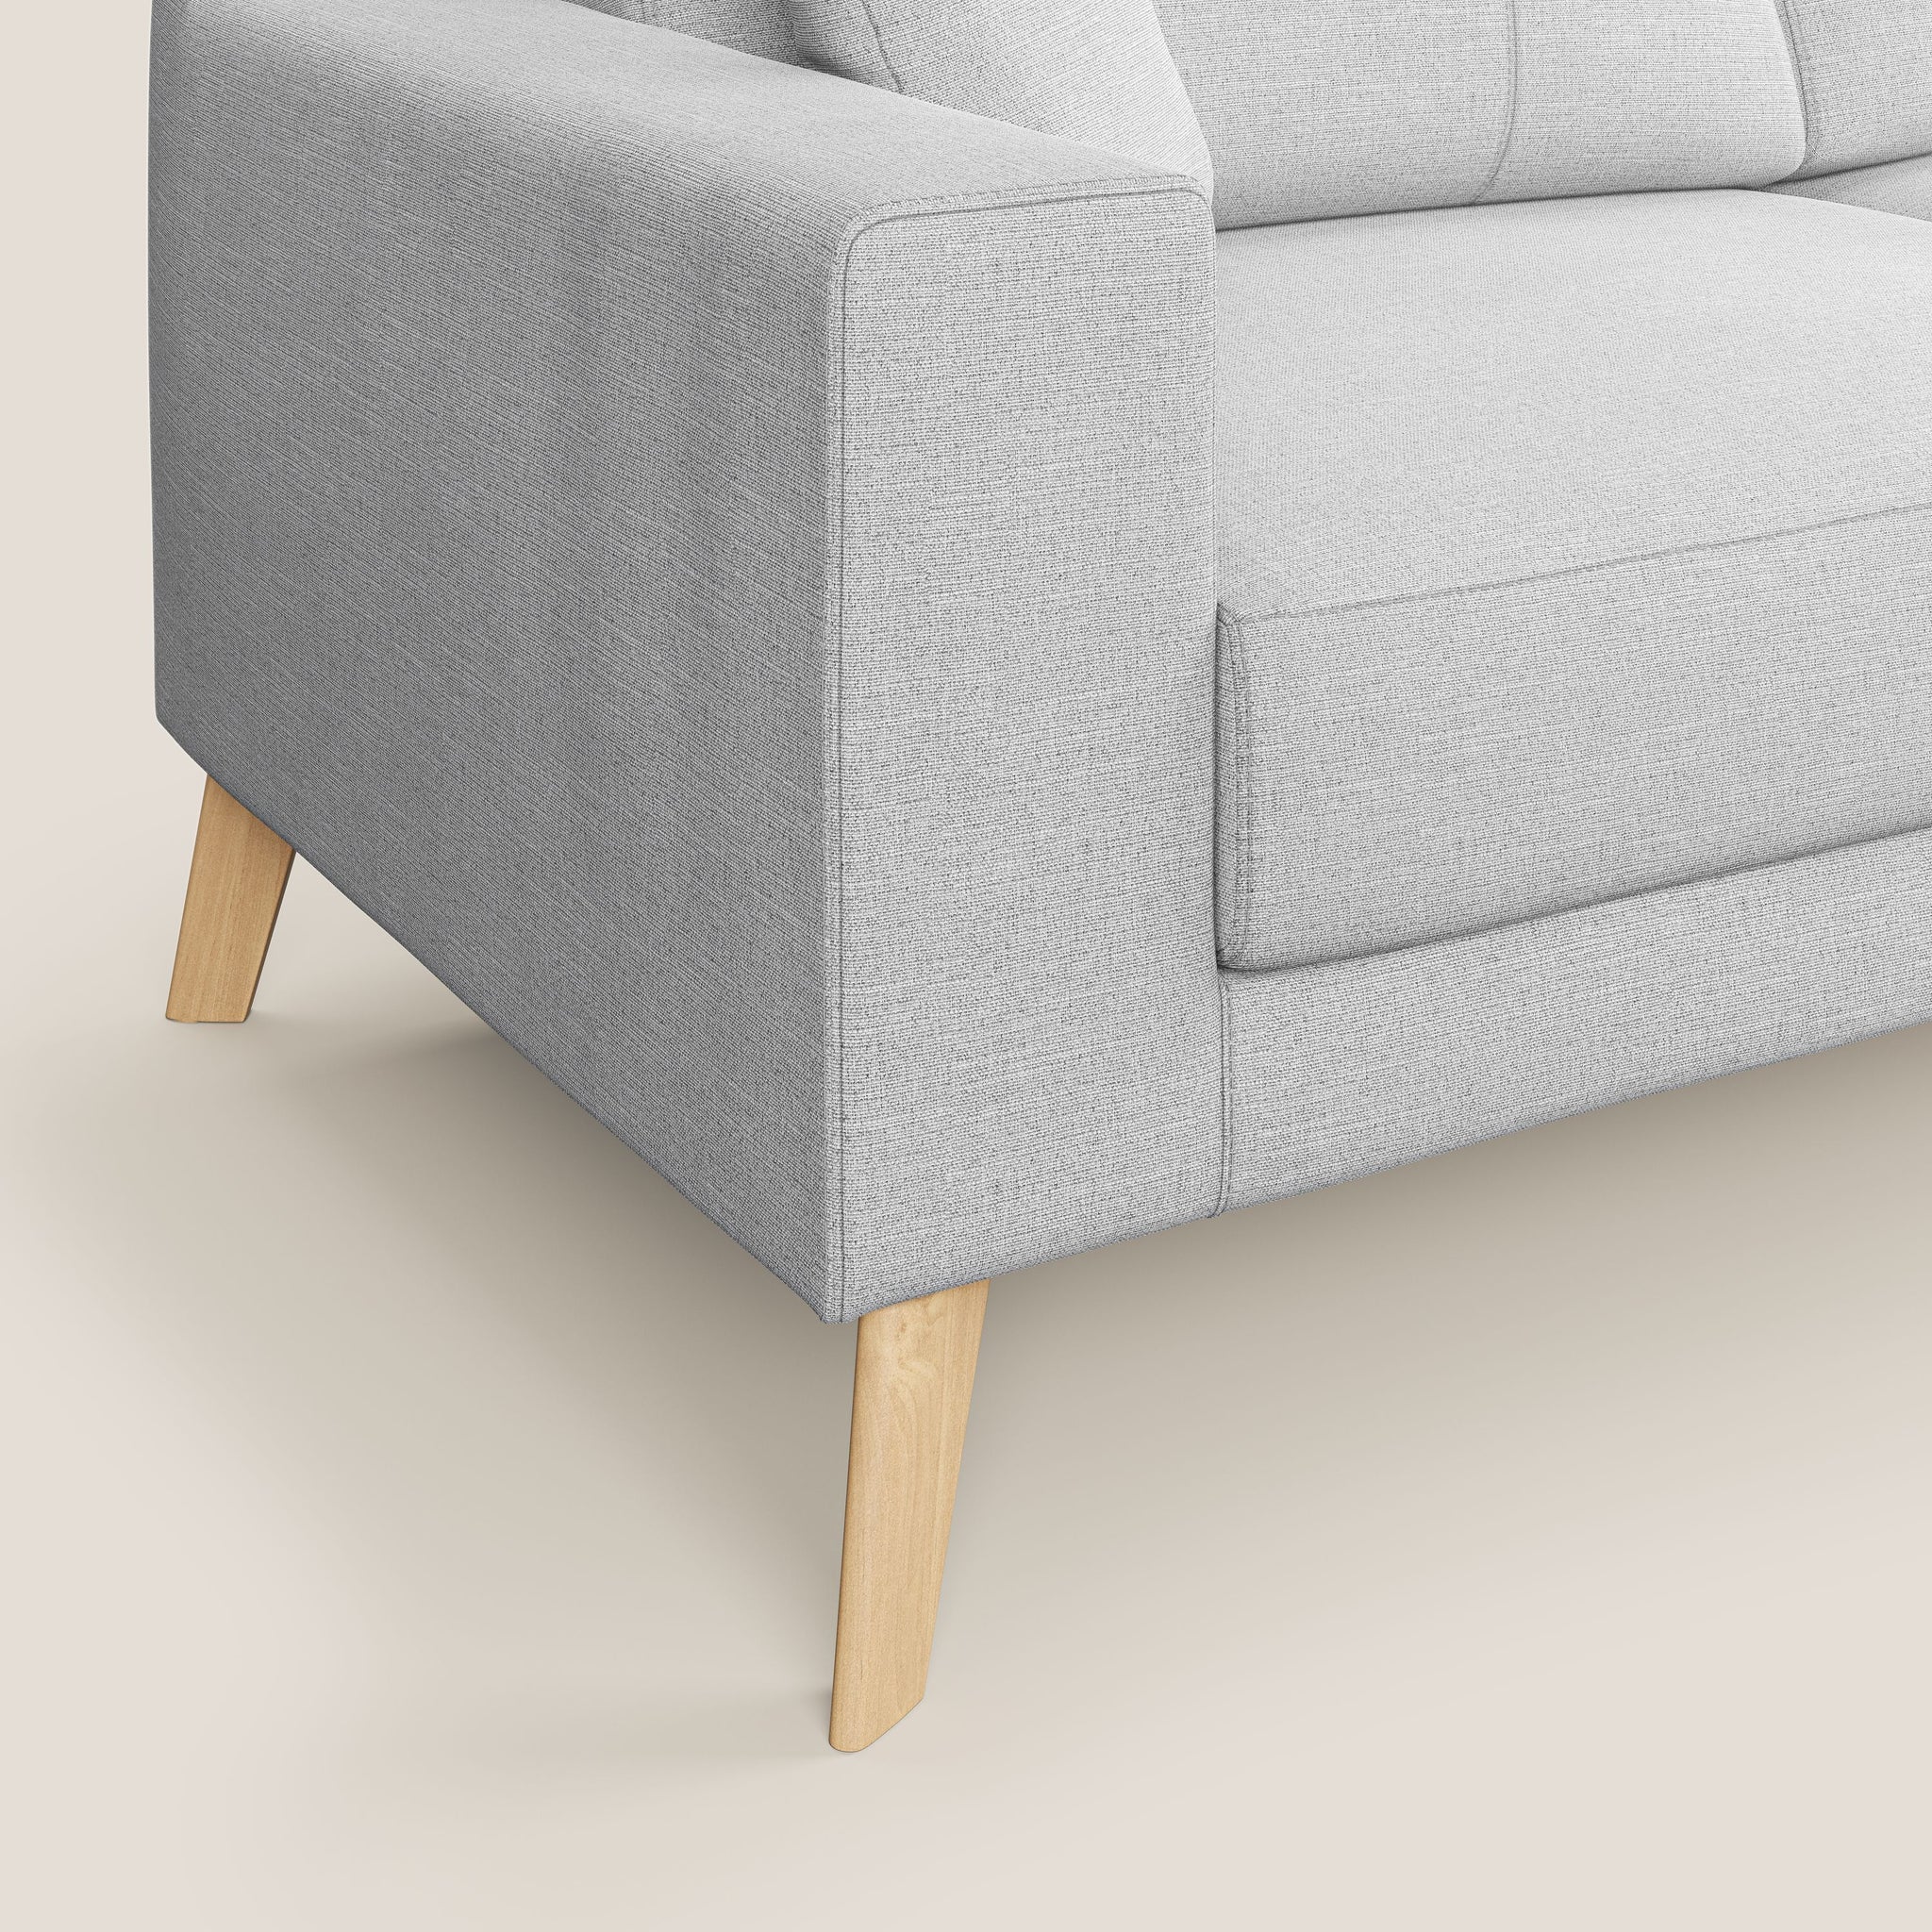 Danish divano angolare reversibile in tessuto ecosostenibile T10